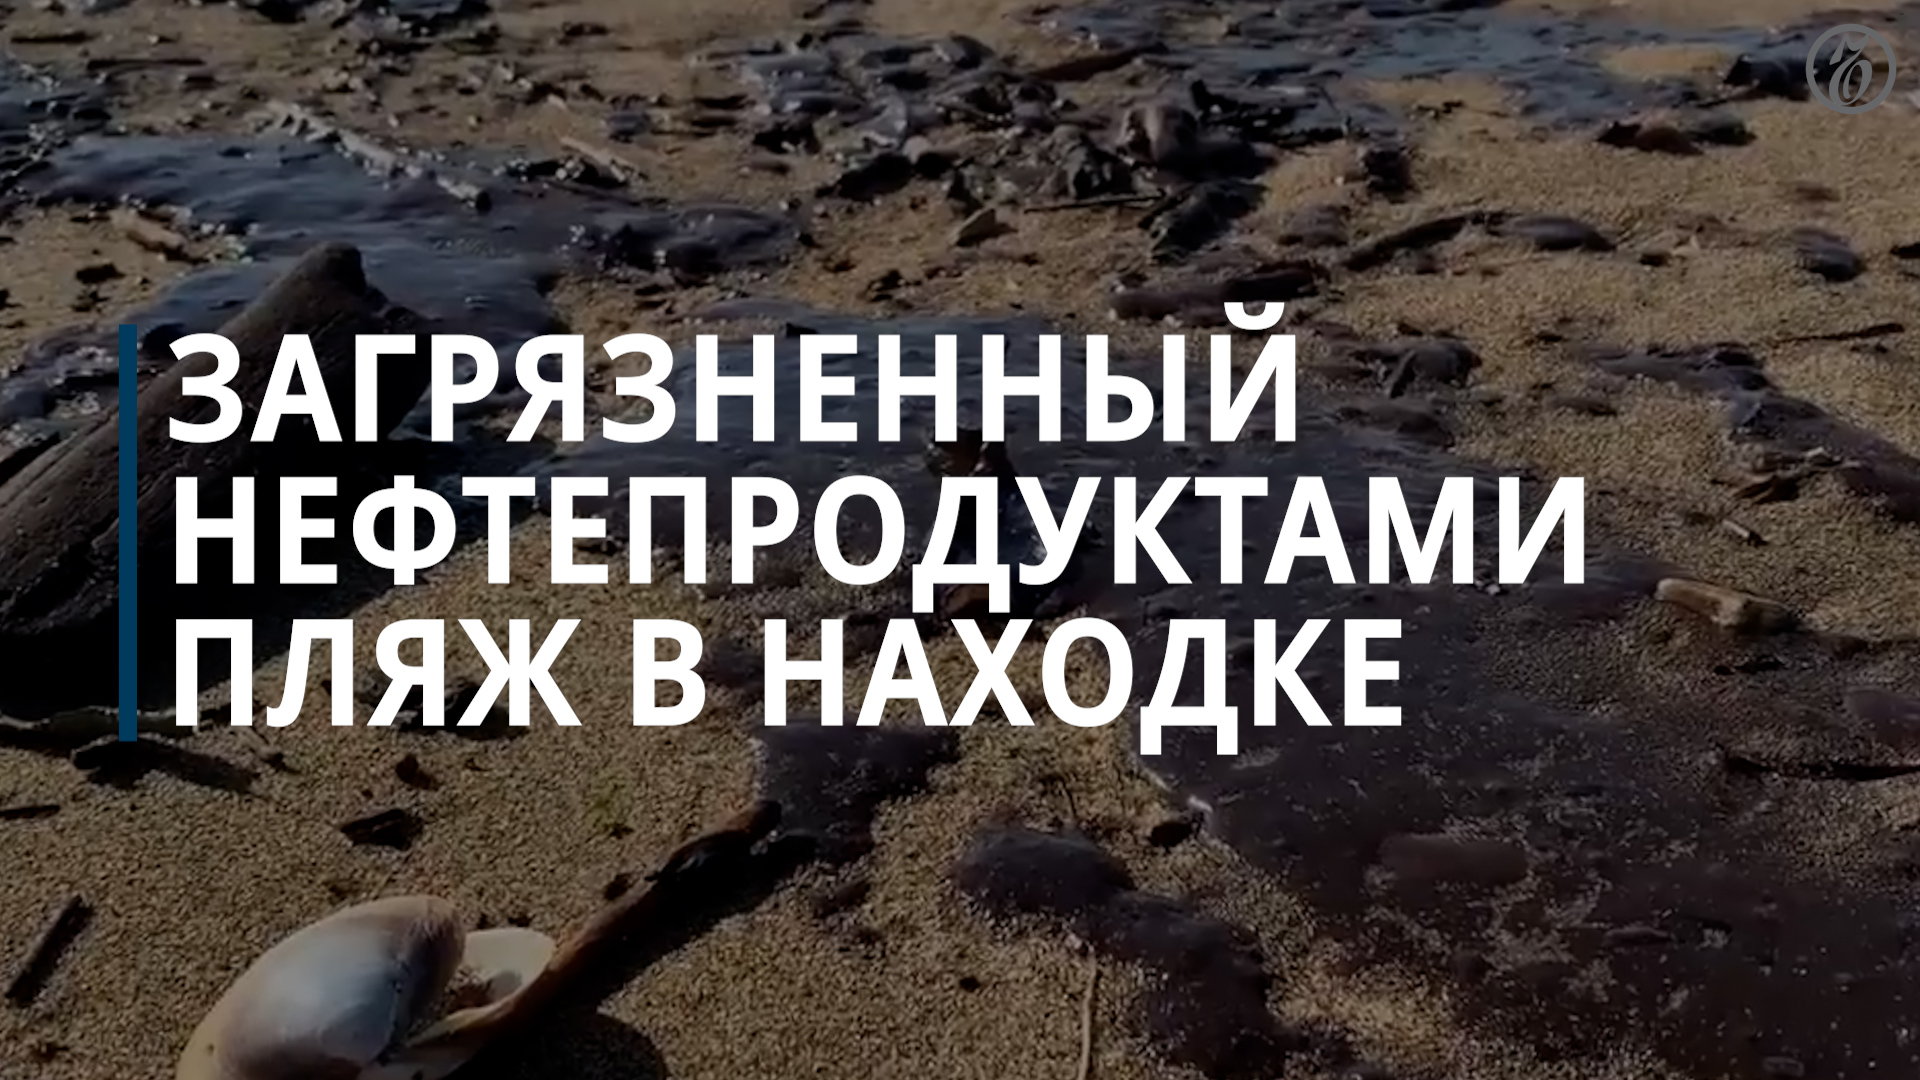 В Находке пляж оказался загрязнен нефтепродуктами — Коммерсантъ